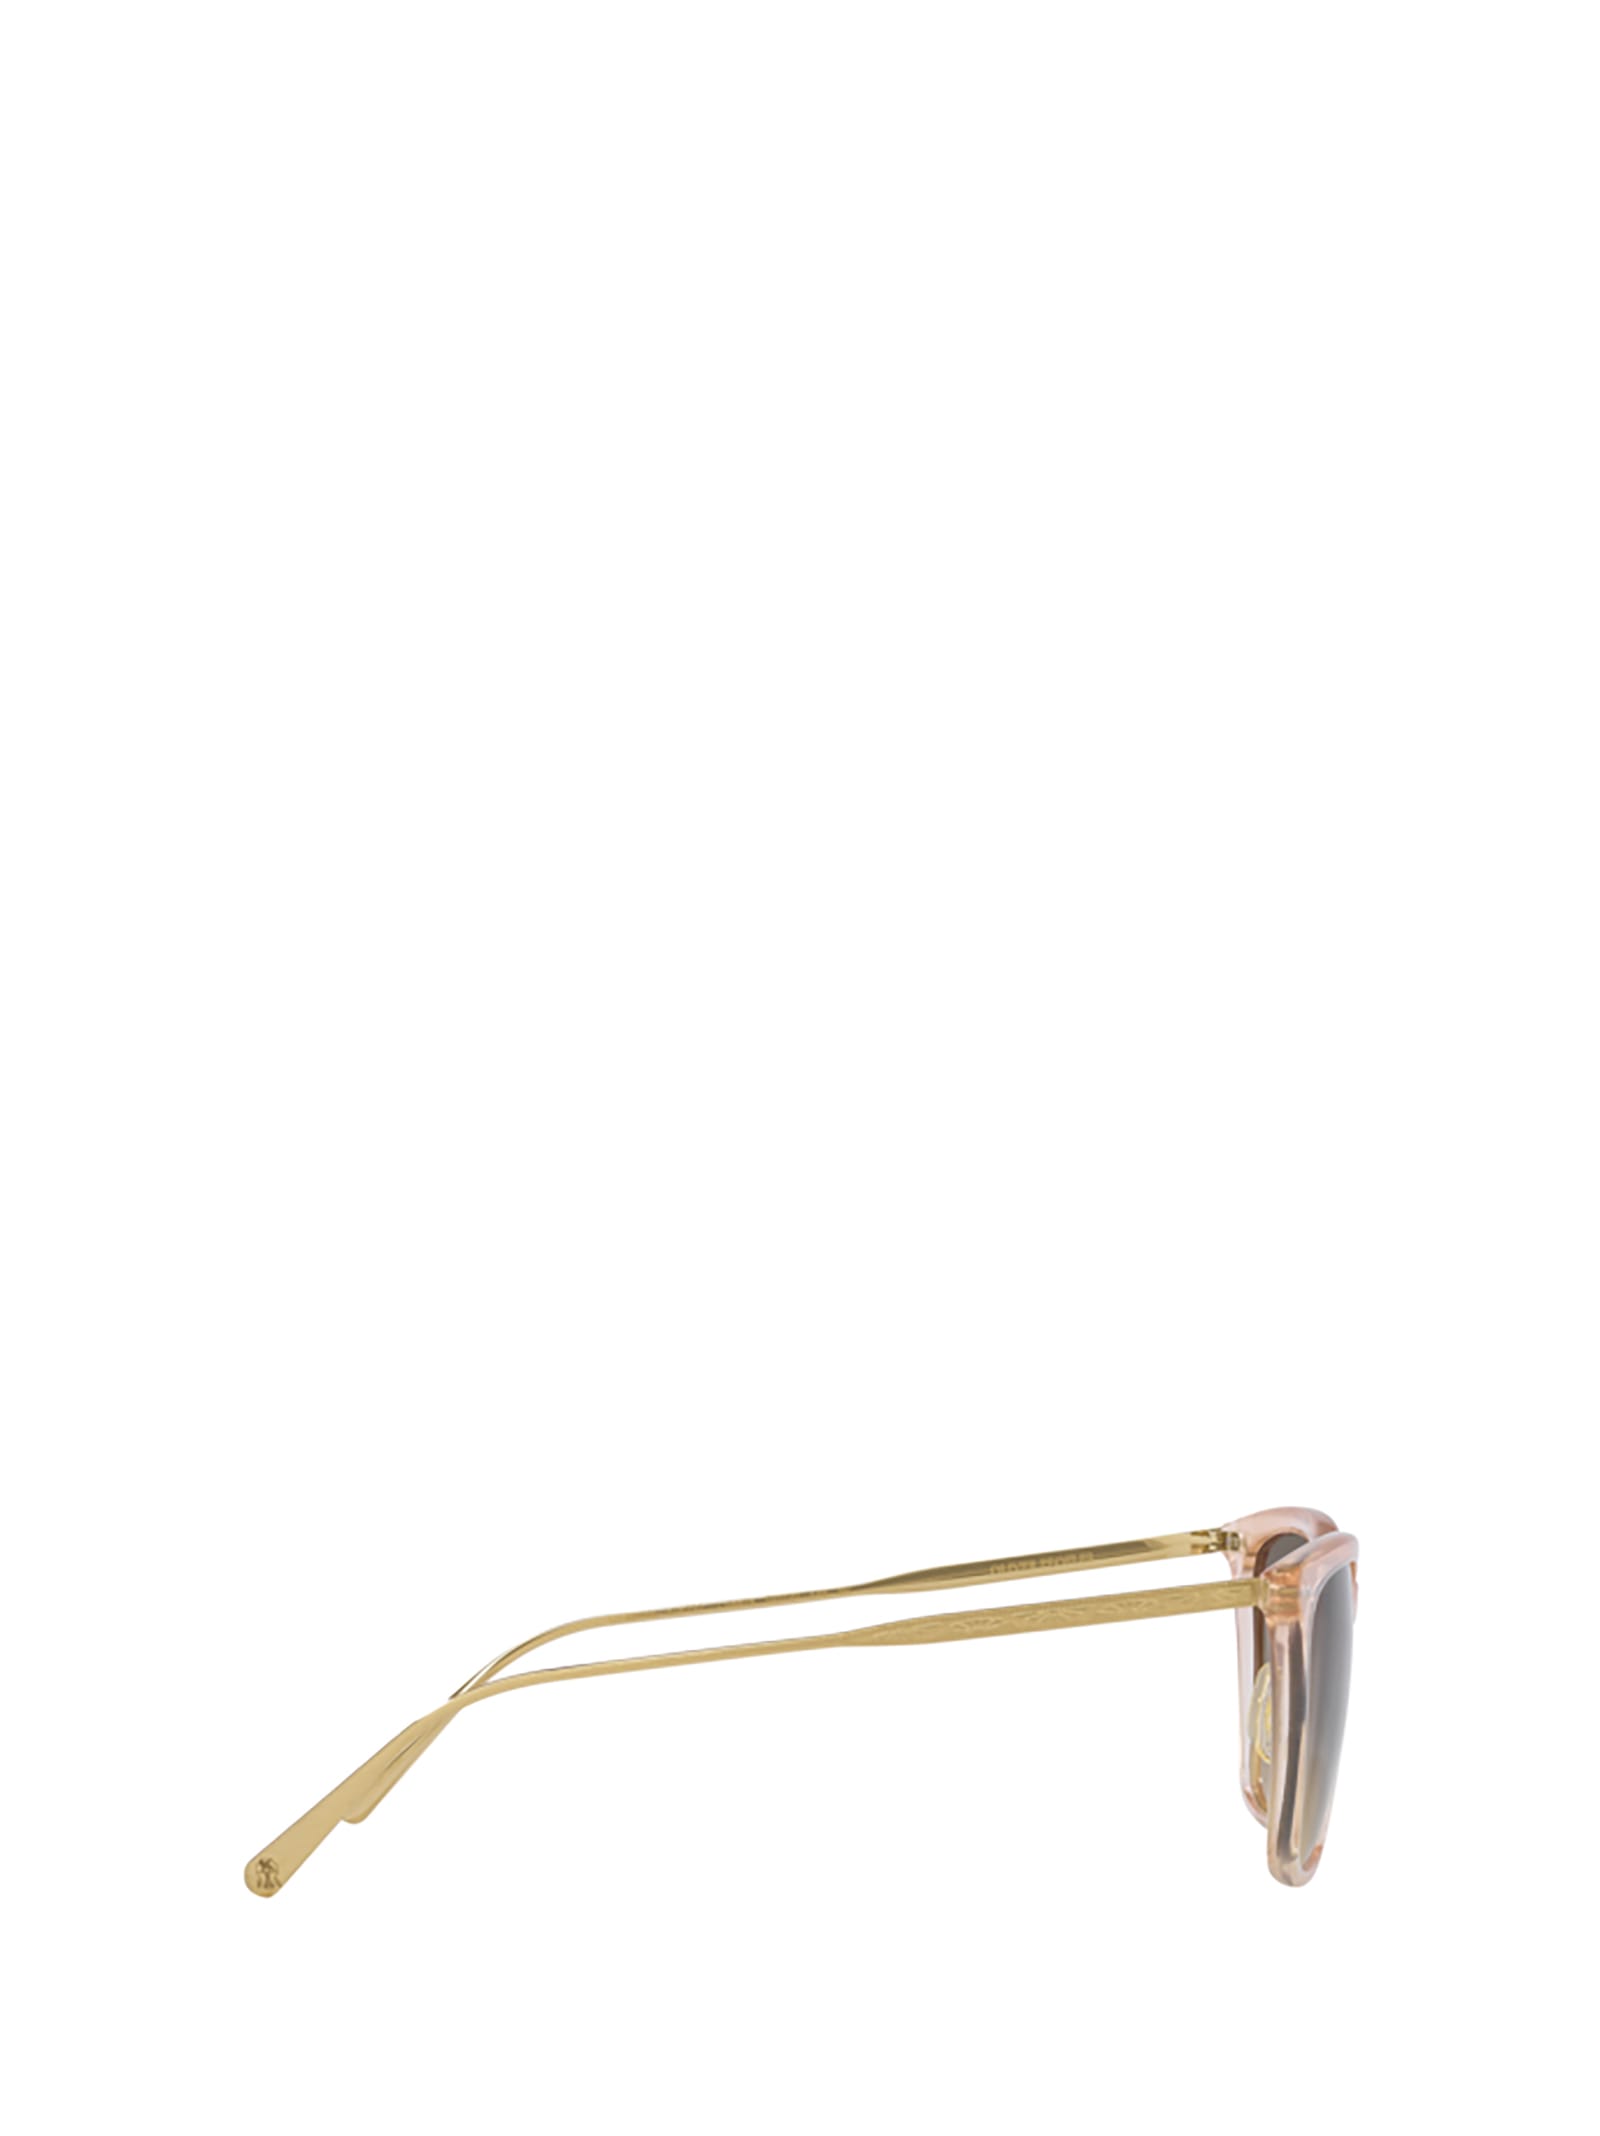 Shop Oliver Peoples Ov5516s Cipria / Brushed Gold Sunglasses